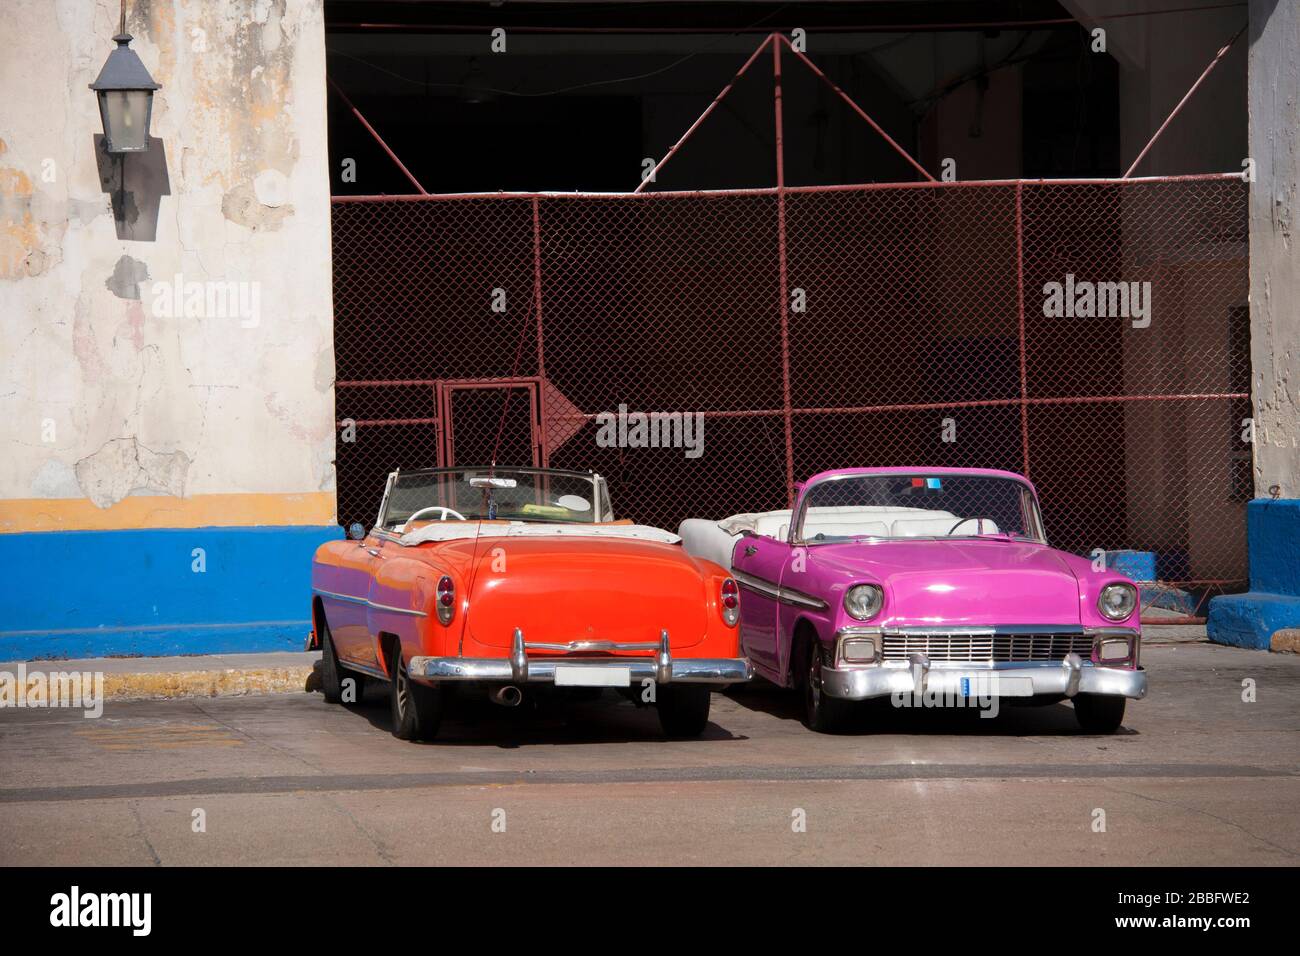 HAVANNA, KUBA - 30. MÄRZ 2017: Zwei konvertible amerikanische Oldtimer aus den 60er Jahren parkten am Eingang einer Garage in der Stadt Havanna, Kuba. Stockfoto